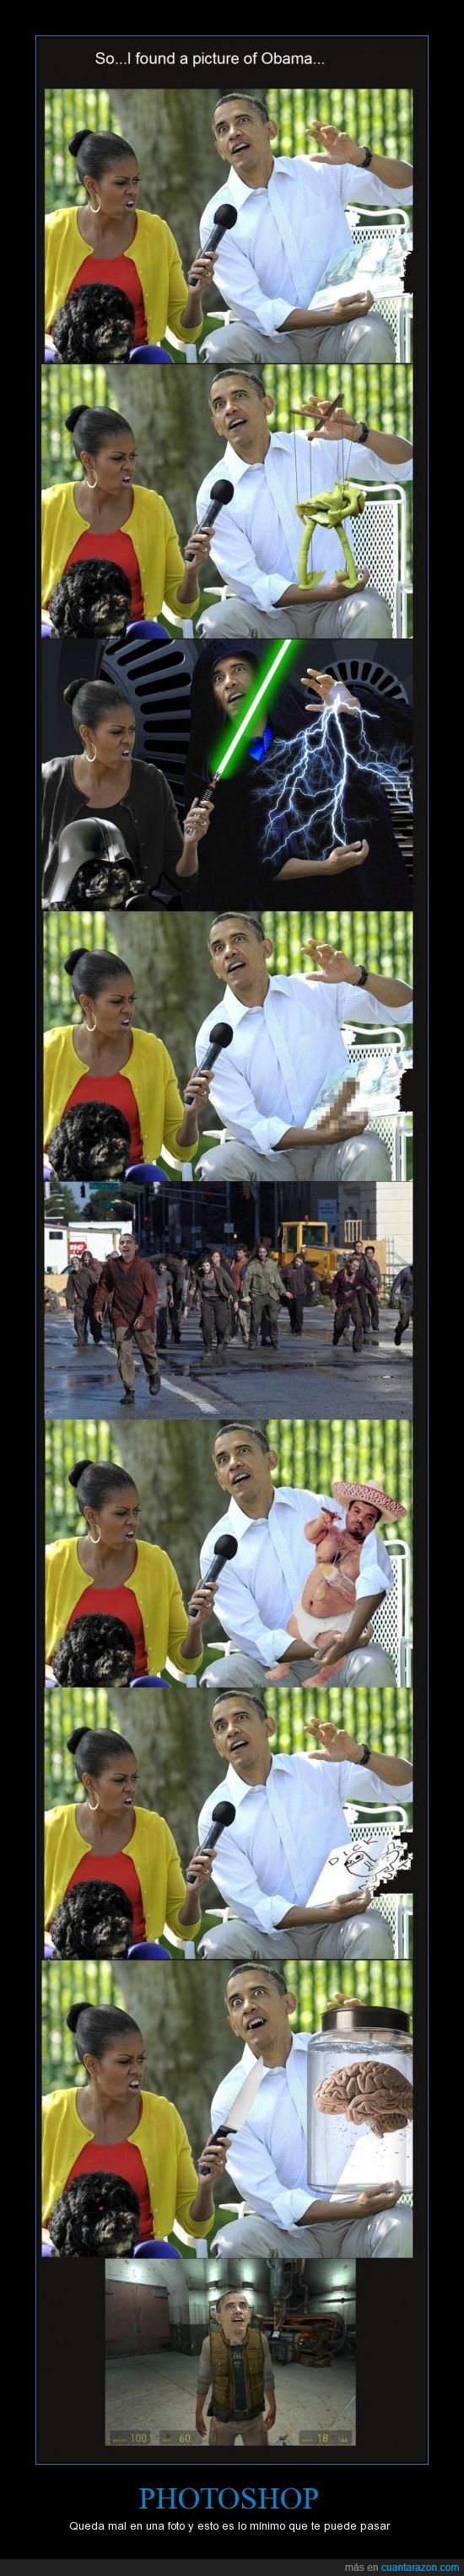 Obama,Photoshop